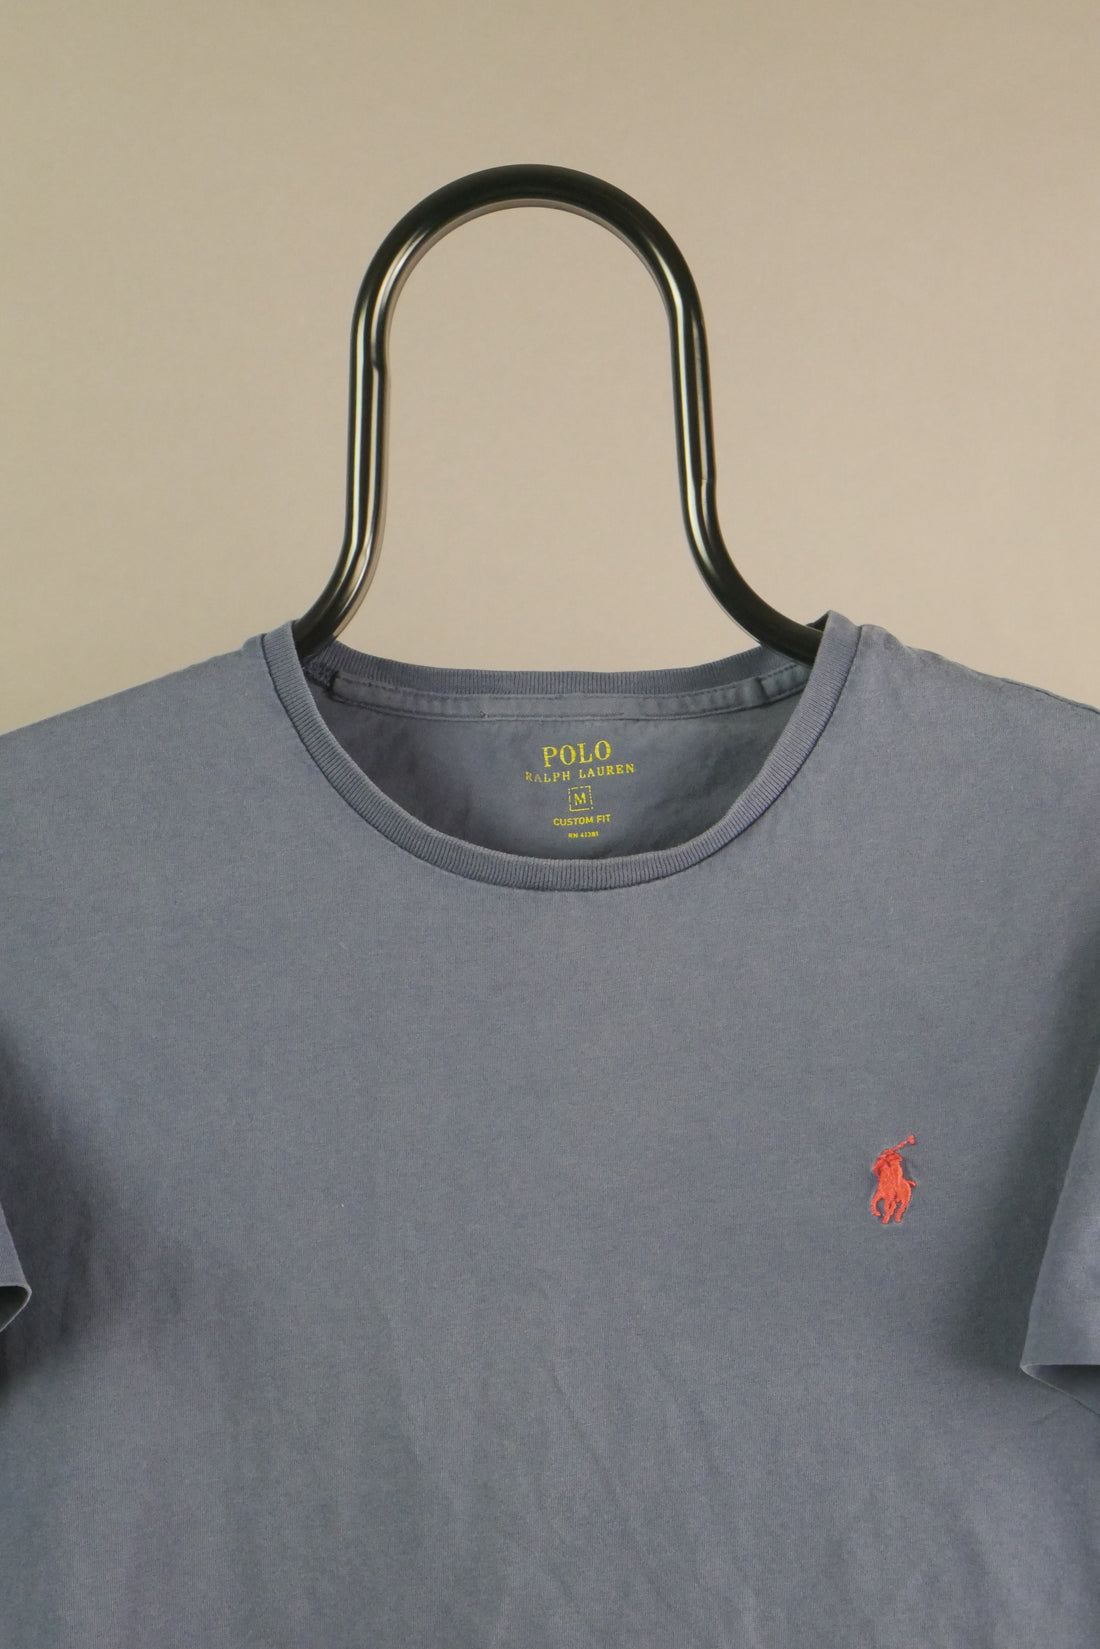 The Polo Ralph Lauren Logo T-Shirt (M)